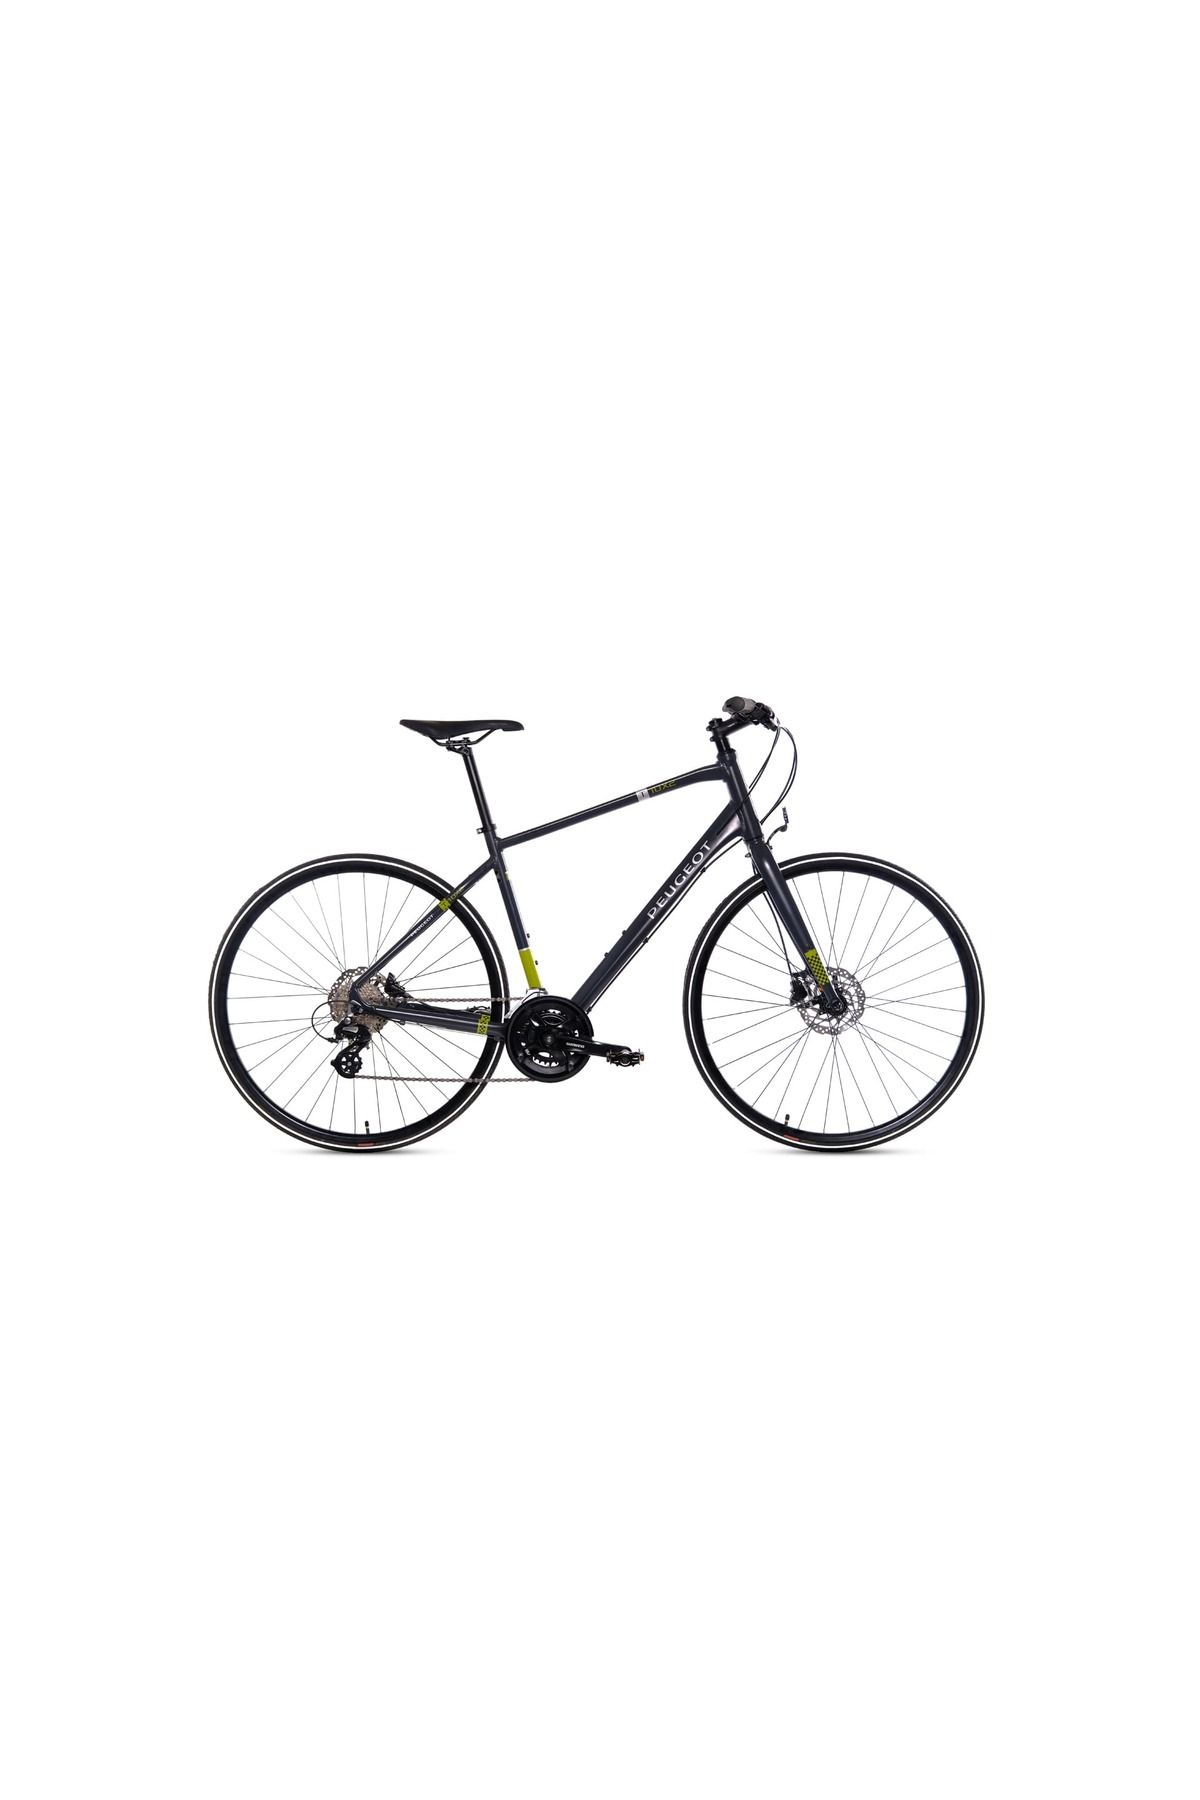 Peugeot Bisiklet T10x2 Trekking Bisiklet Greymoss 50 cm